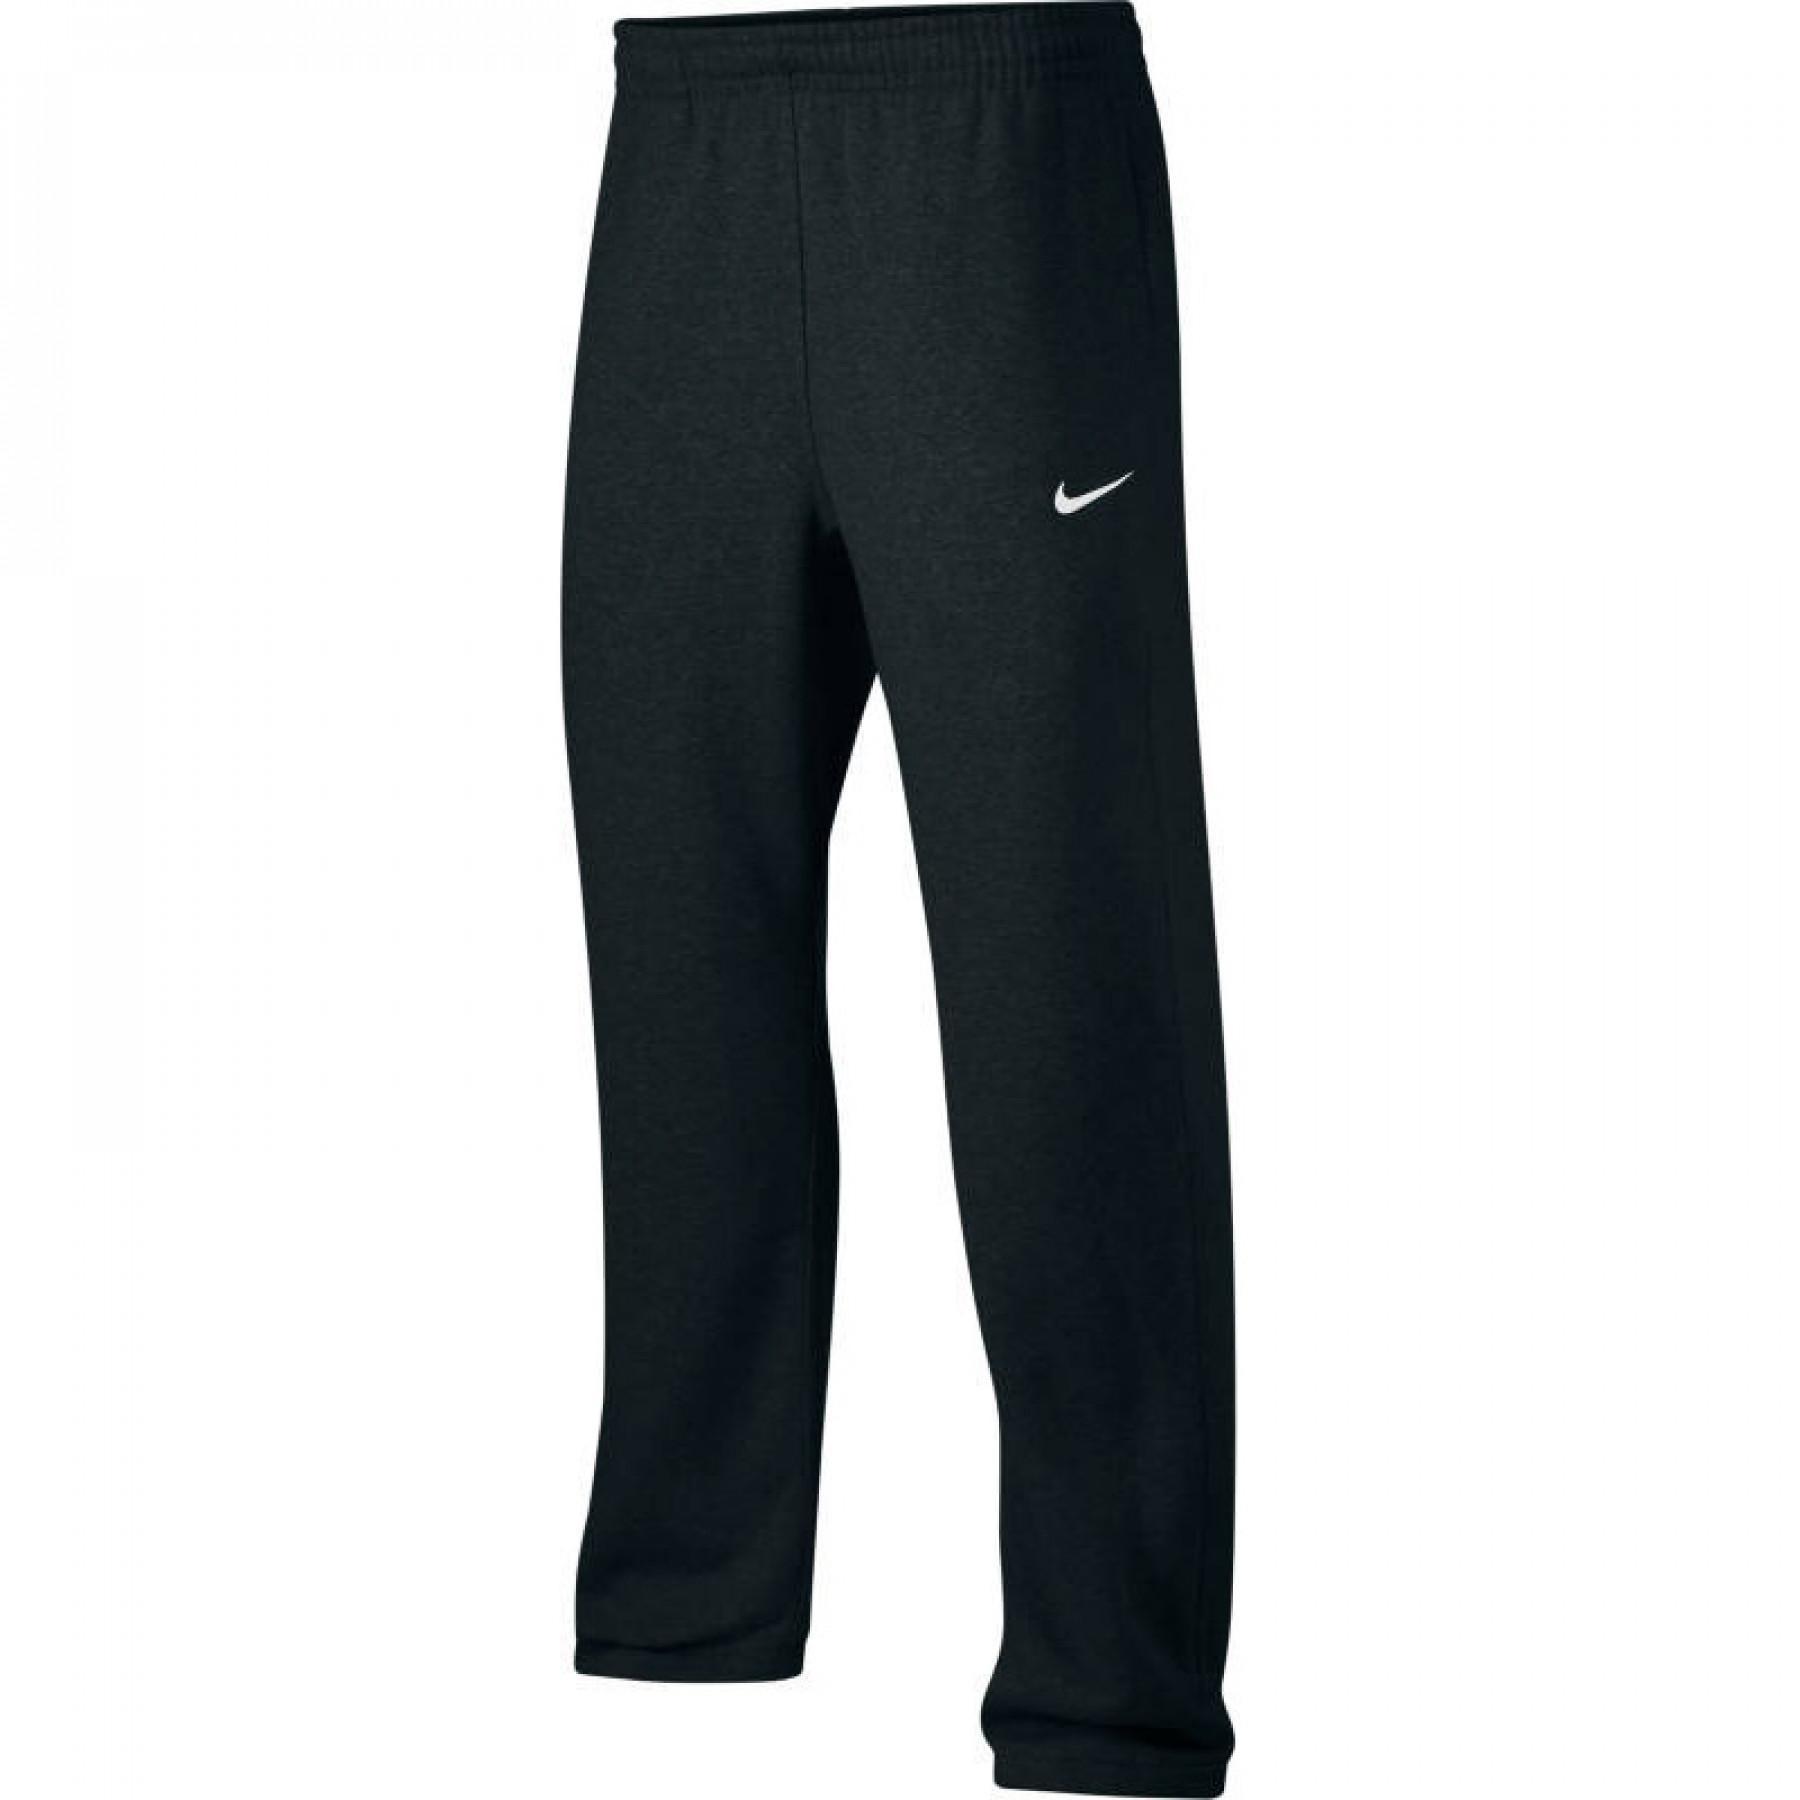 Spodnie Nike Team Club